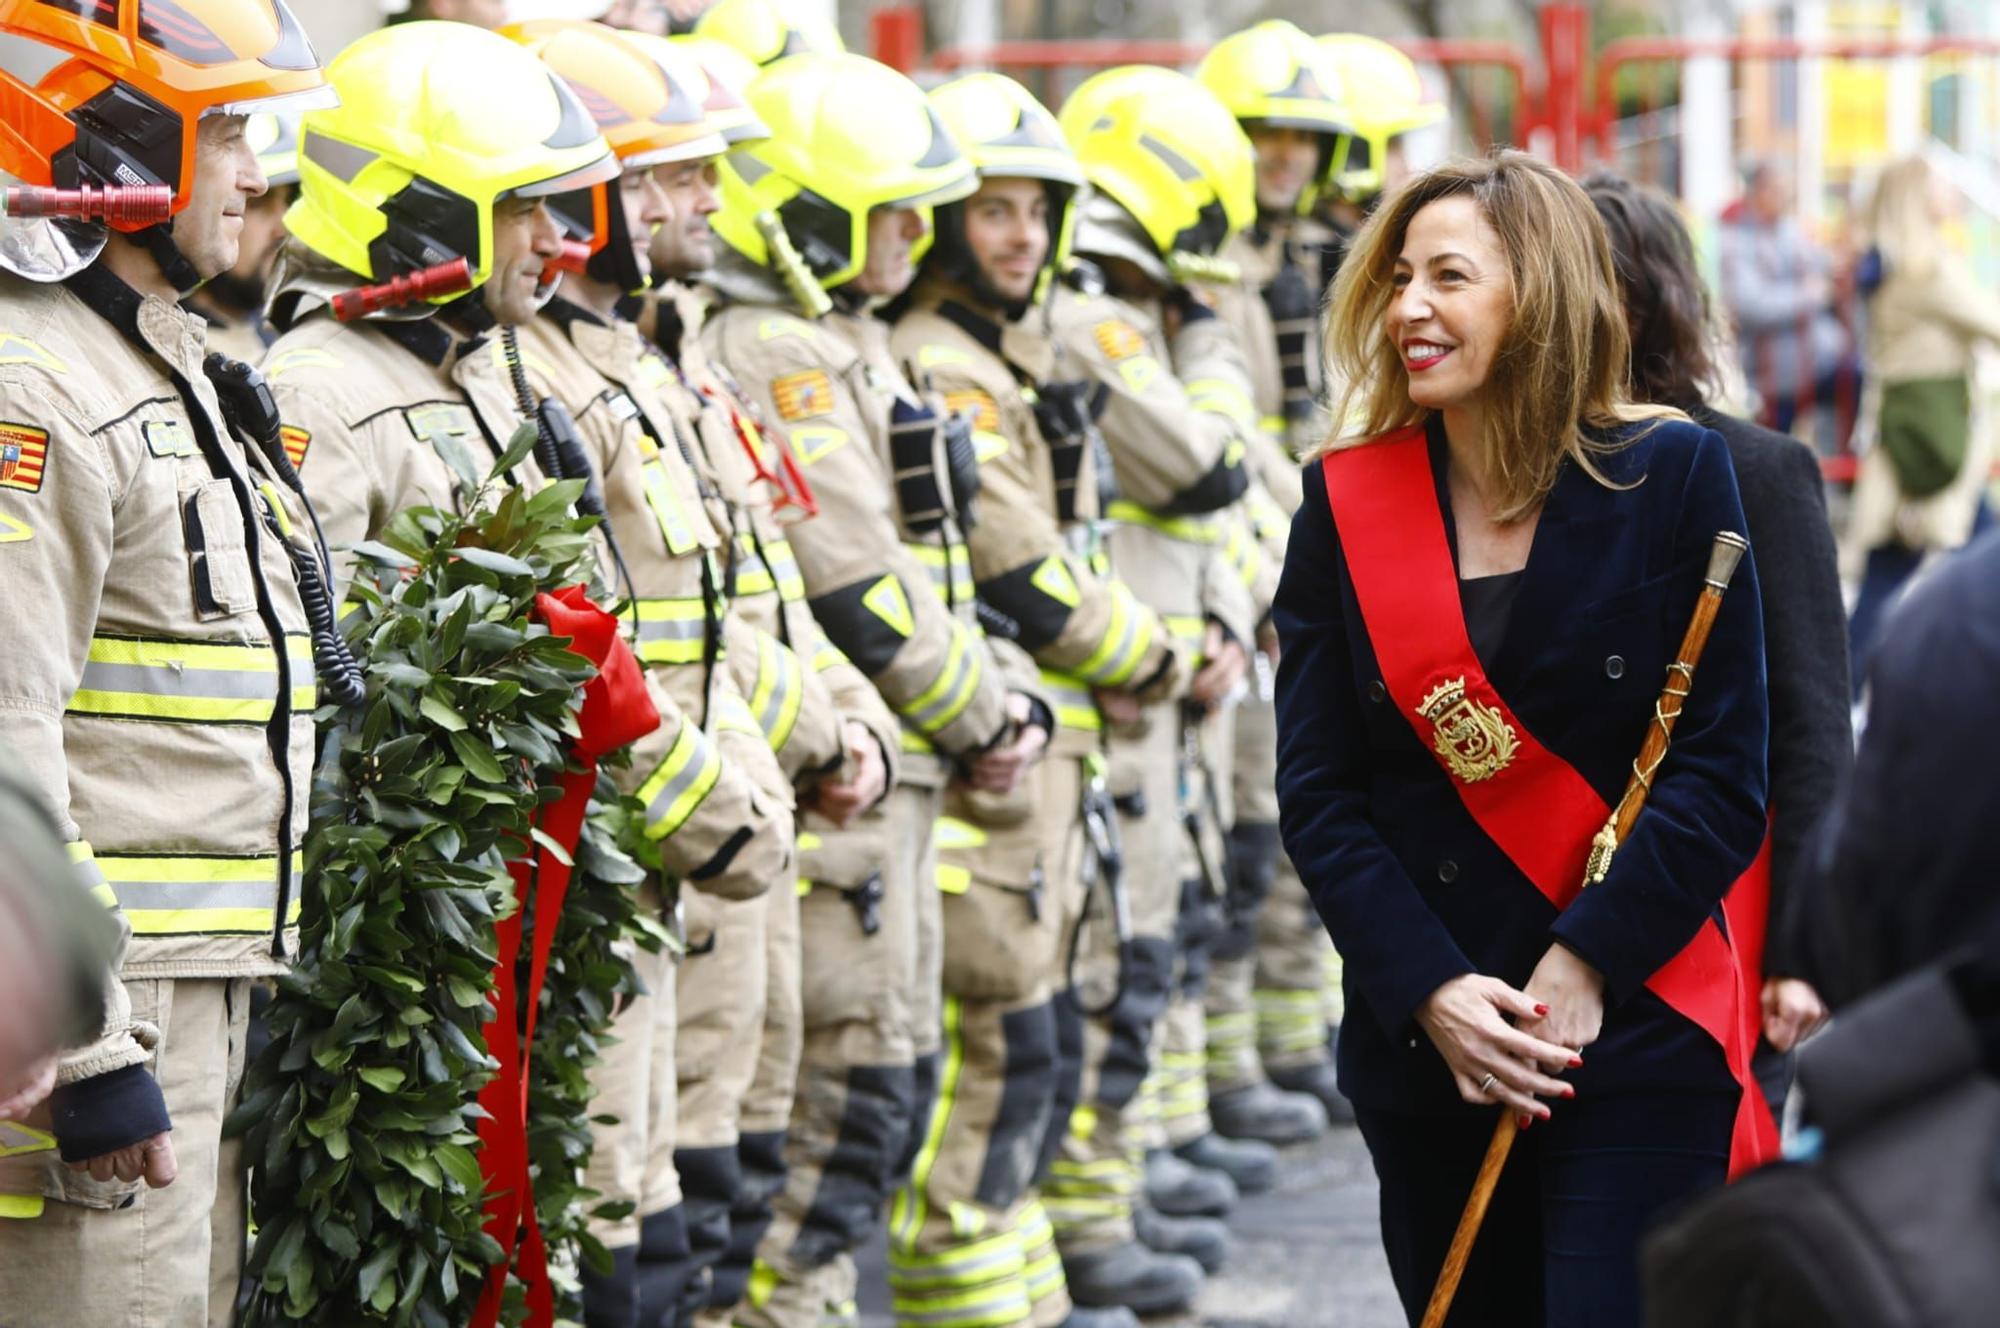 Los bomberos de Zaragoza celebran el día de su patrón, San Juan de Dios